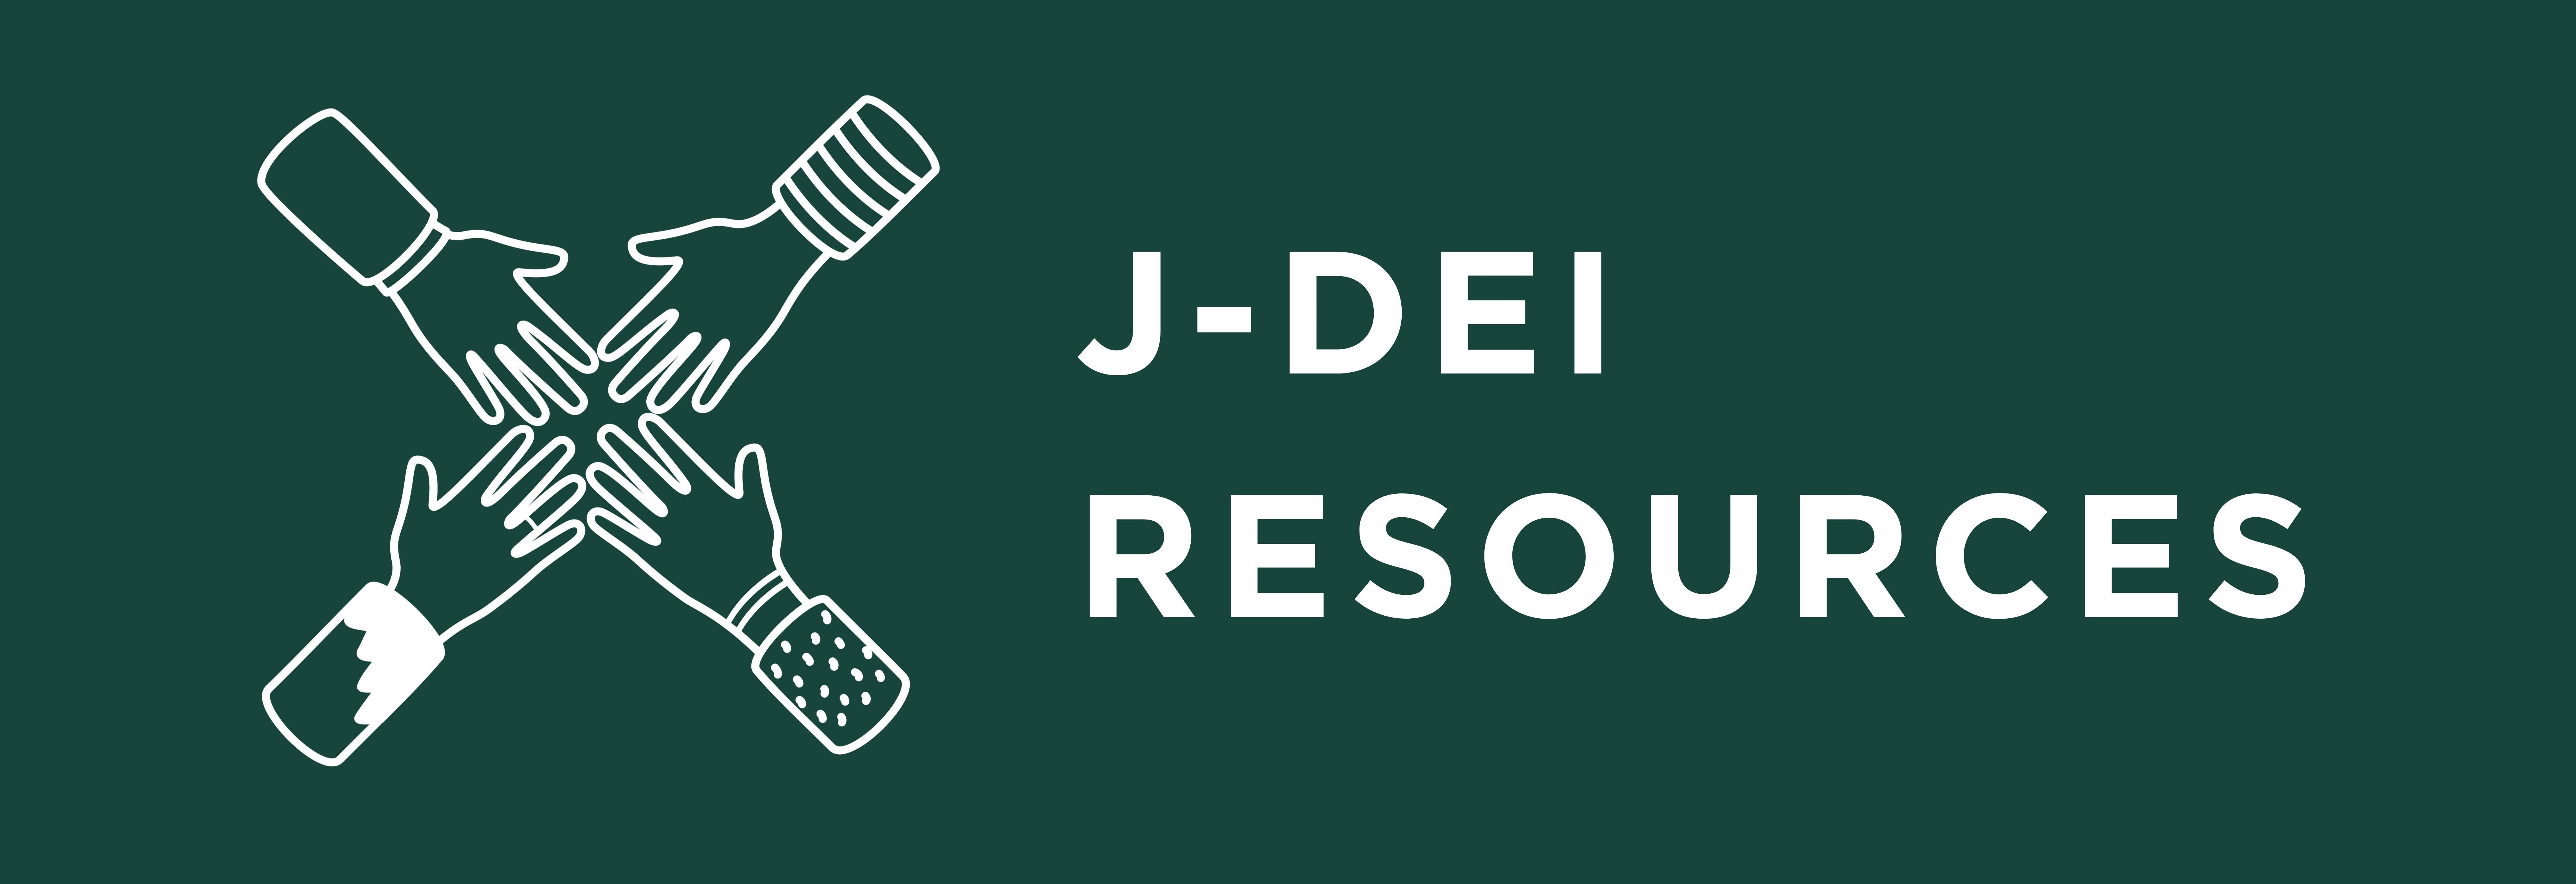 J-DEI Resources